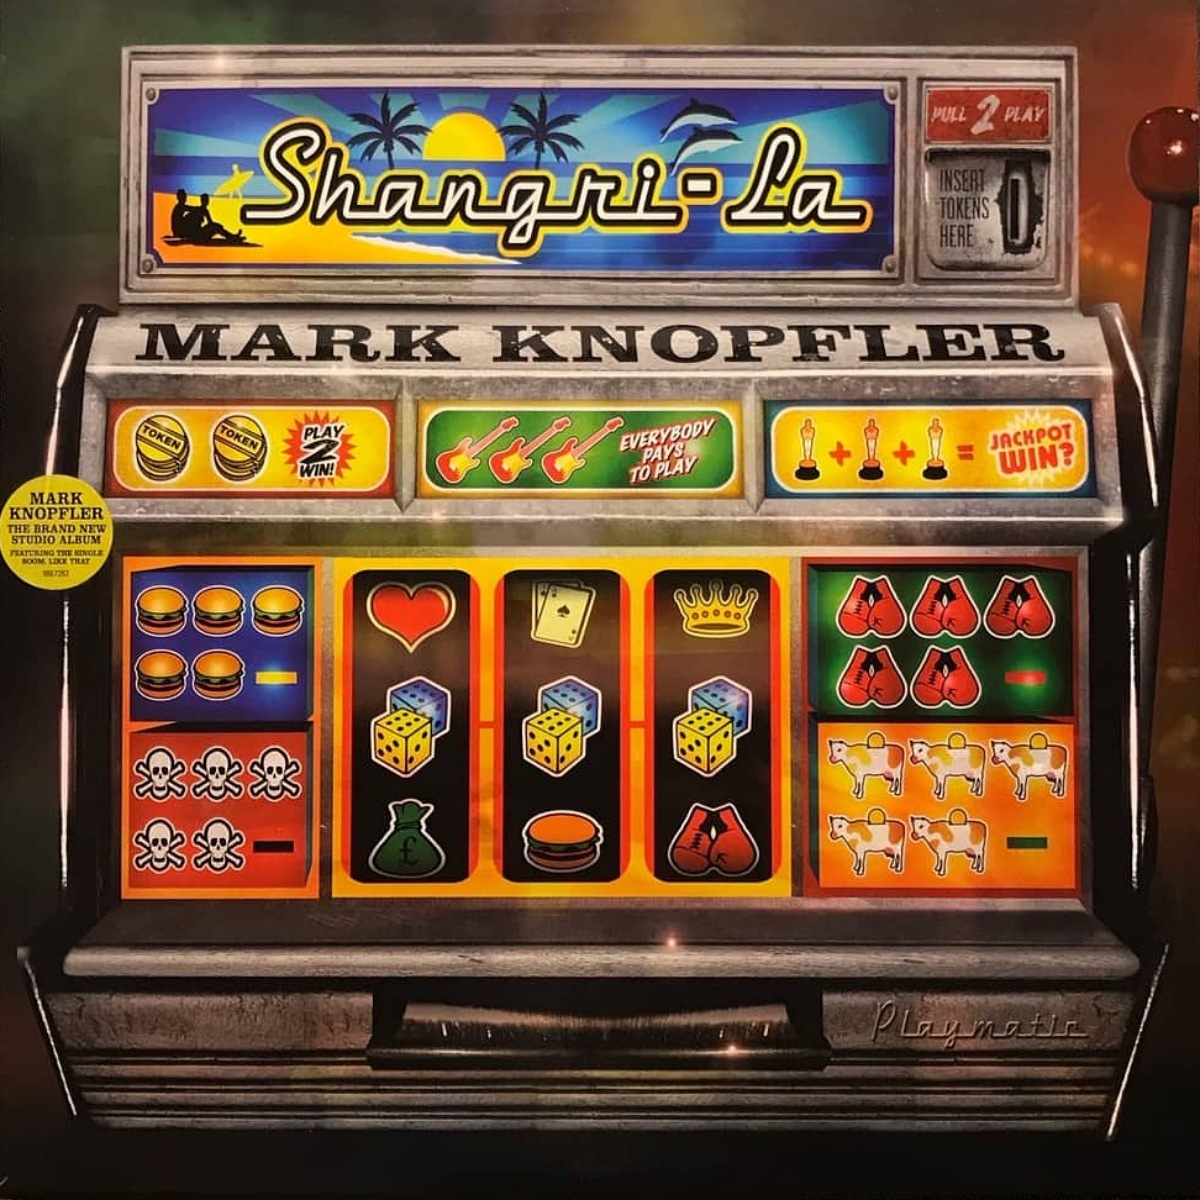 Cover of Mark Knopfler's "Shangri-La" album